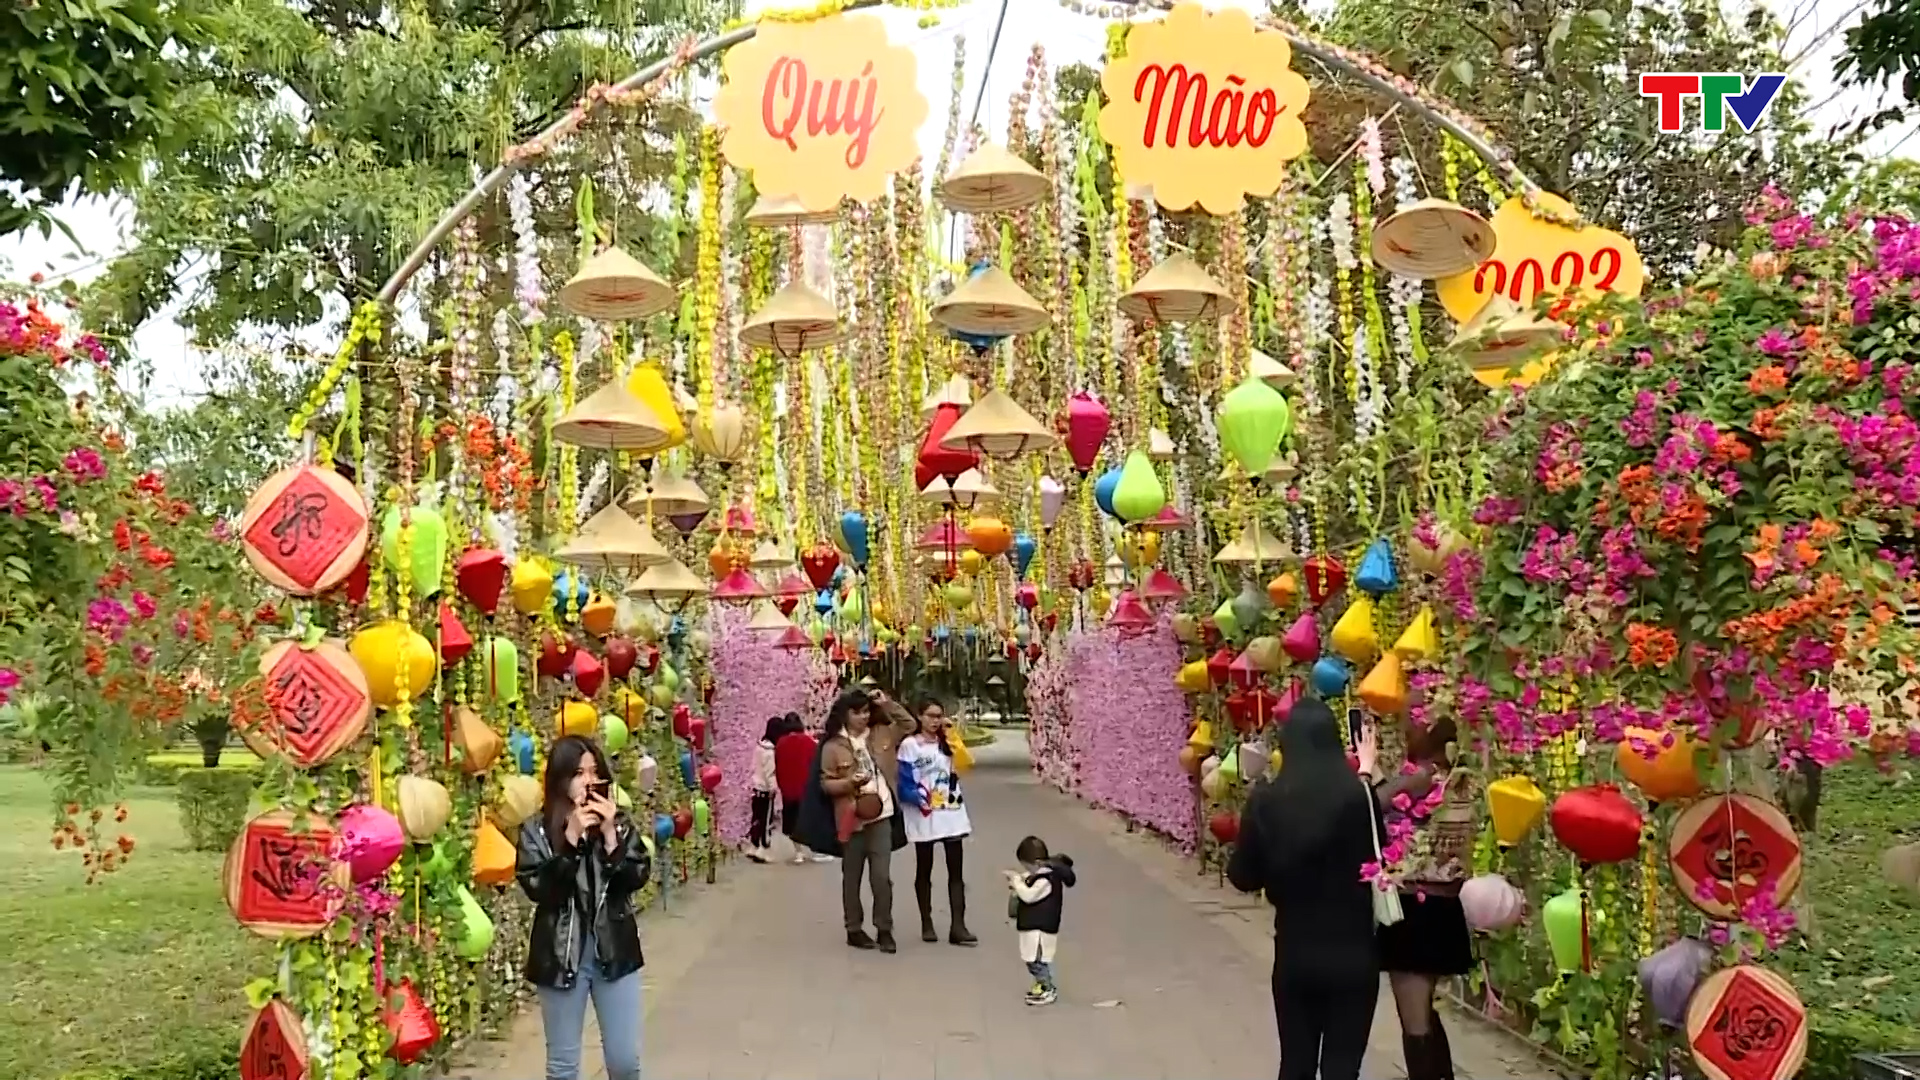 Thành phố Thanh Hoá đa dạng các hoạt động văn hoá phục vụ du lịch - Ảnh 5.